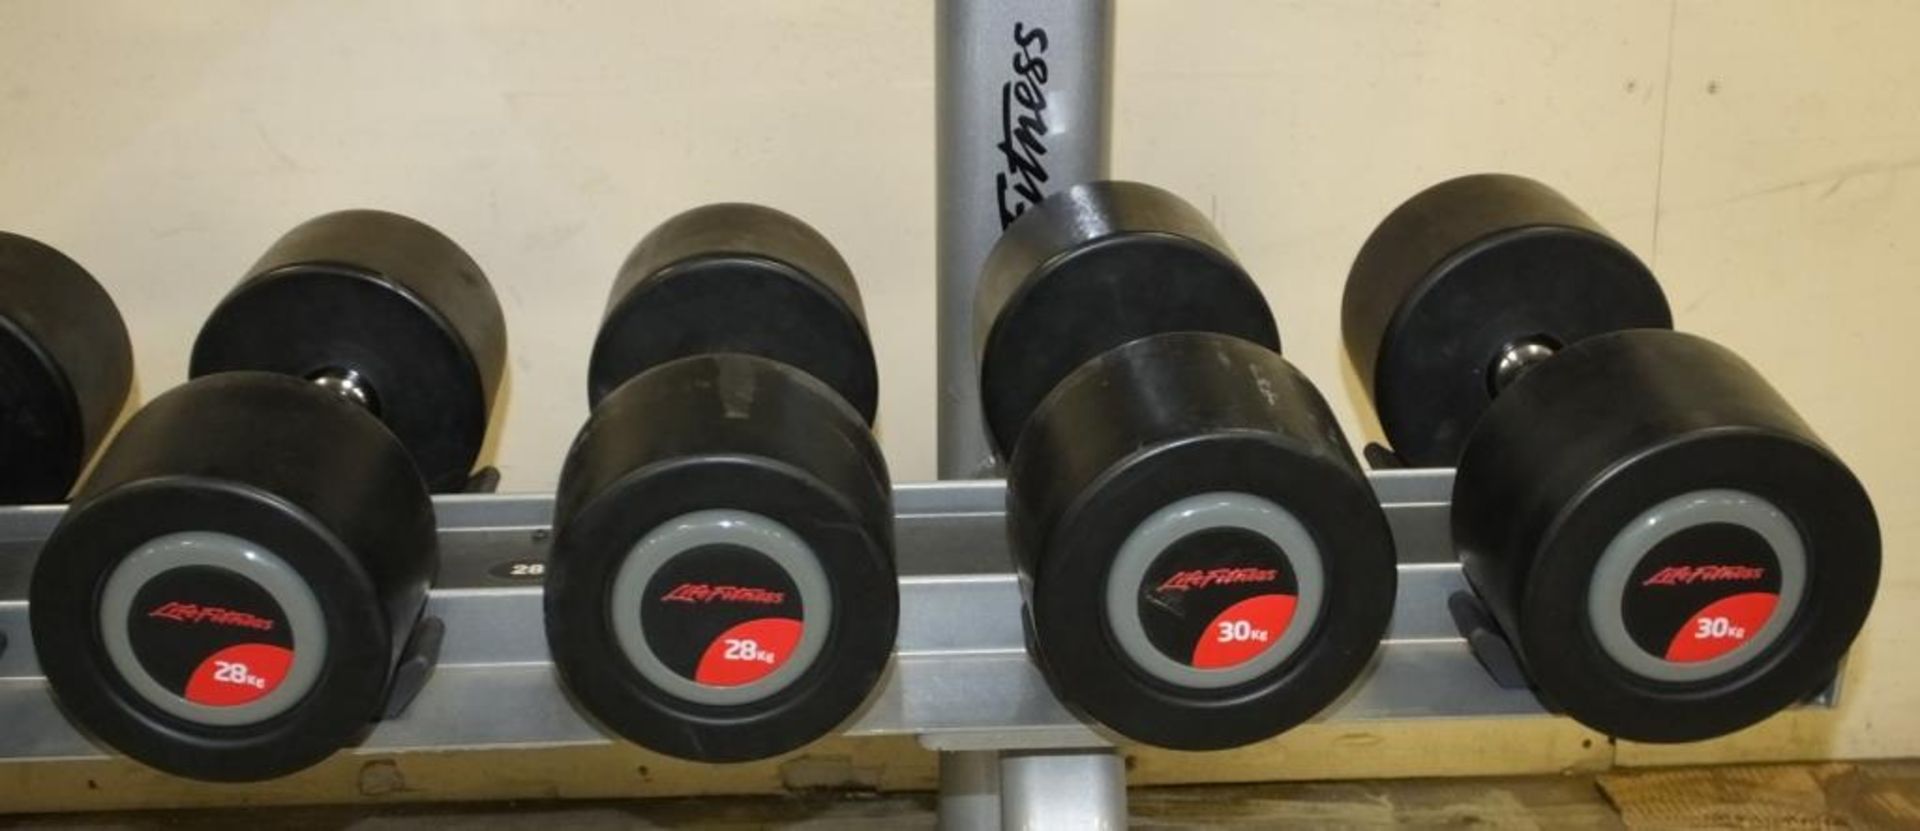 Life Fitness complete dumbbell set on rack - pairs of - 12kg, 14kg, 16kg, 18kg, 20kg, 22kg and more - Image 7 of 14